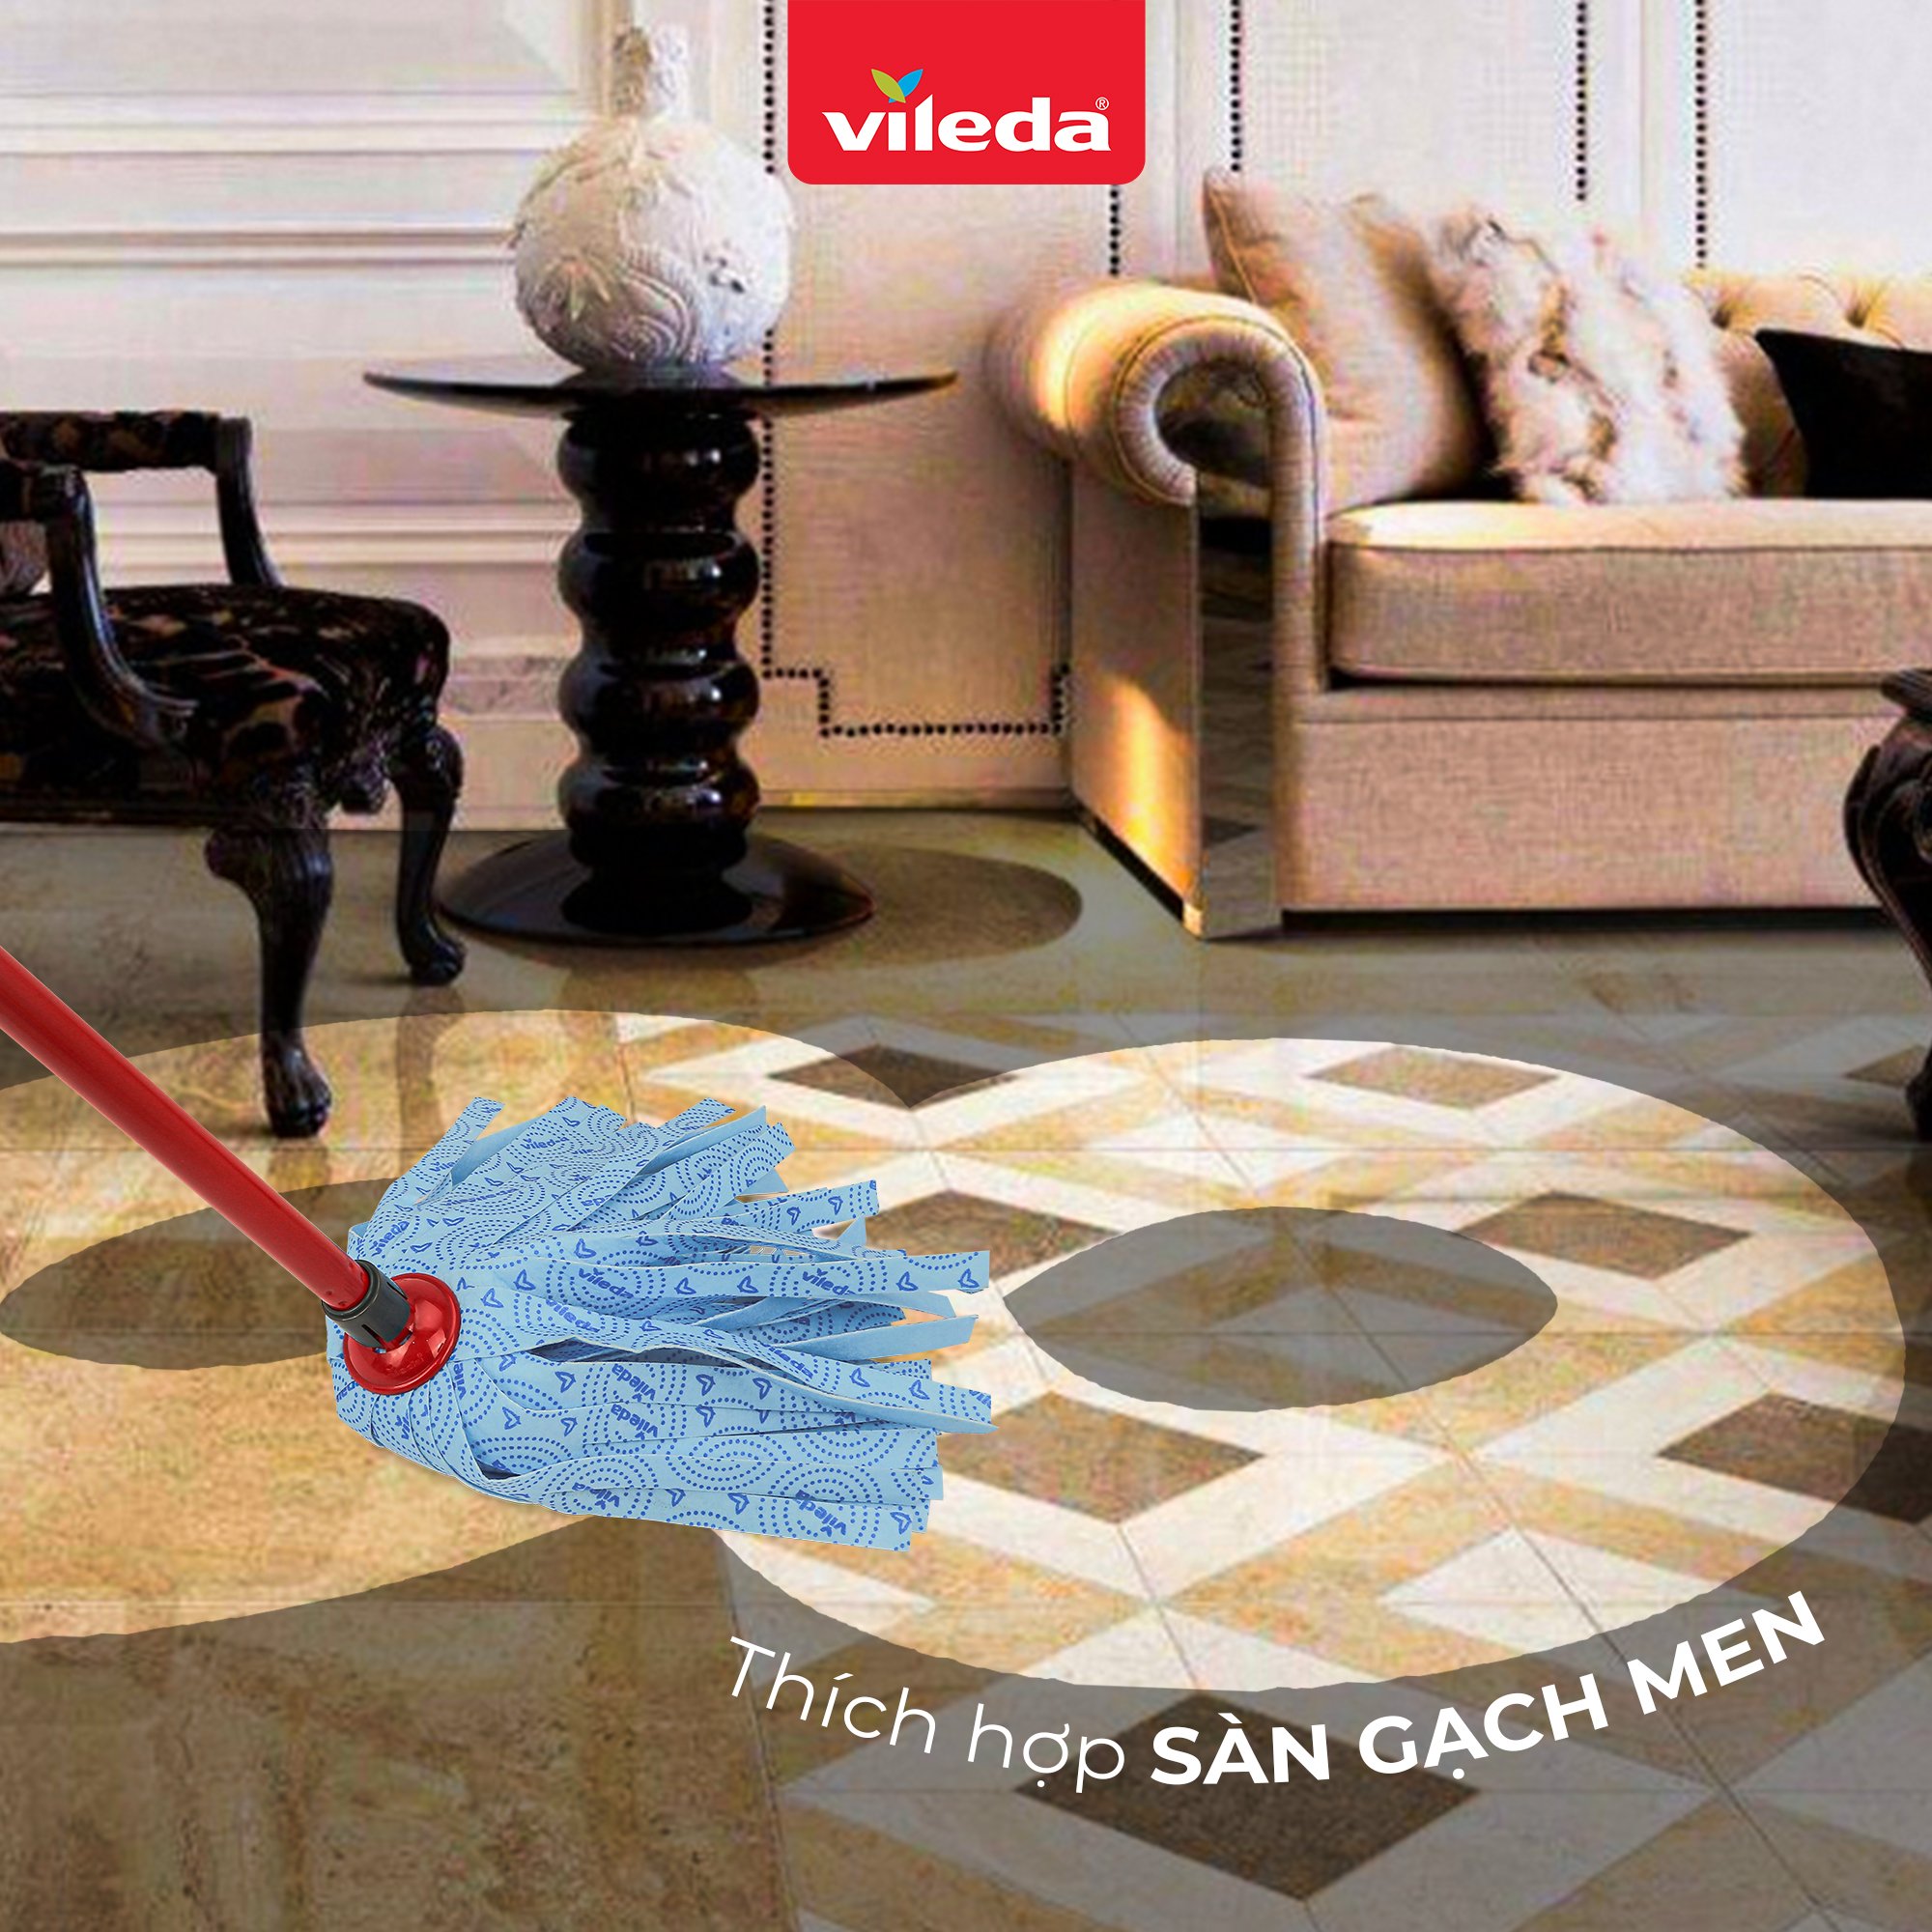 Cây lau nhà đa năng VILEDA Supermocio Wet vải sợ microfibre, đa năng cho mọi loại sàn nhà